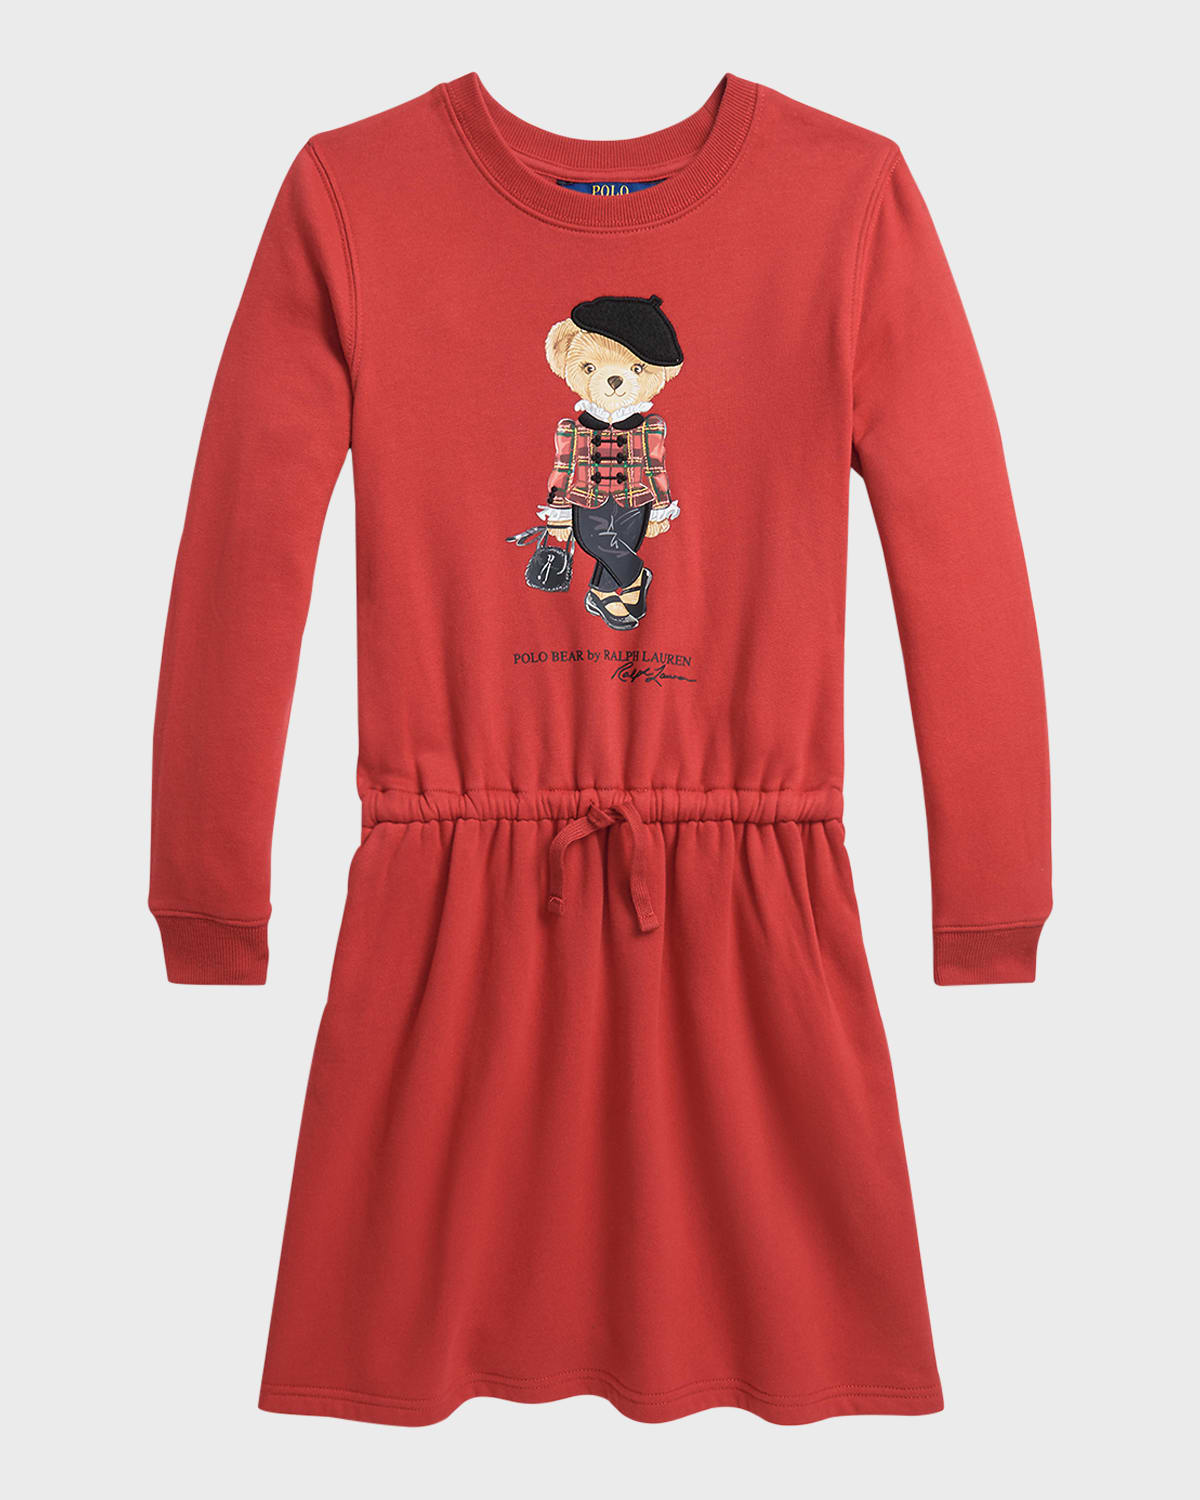 Ralph Lauren Kids' Girl's Parisian-inspired Polo Bear Fleece Dress In Park Ave Red